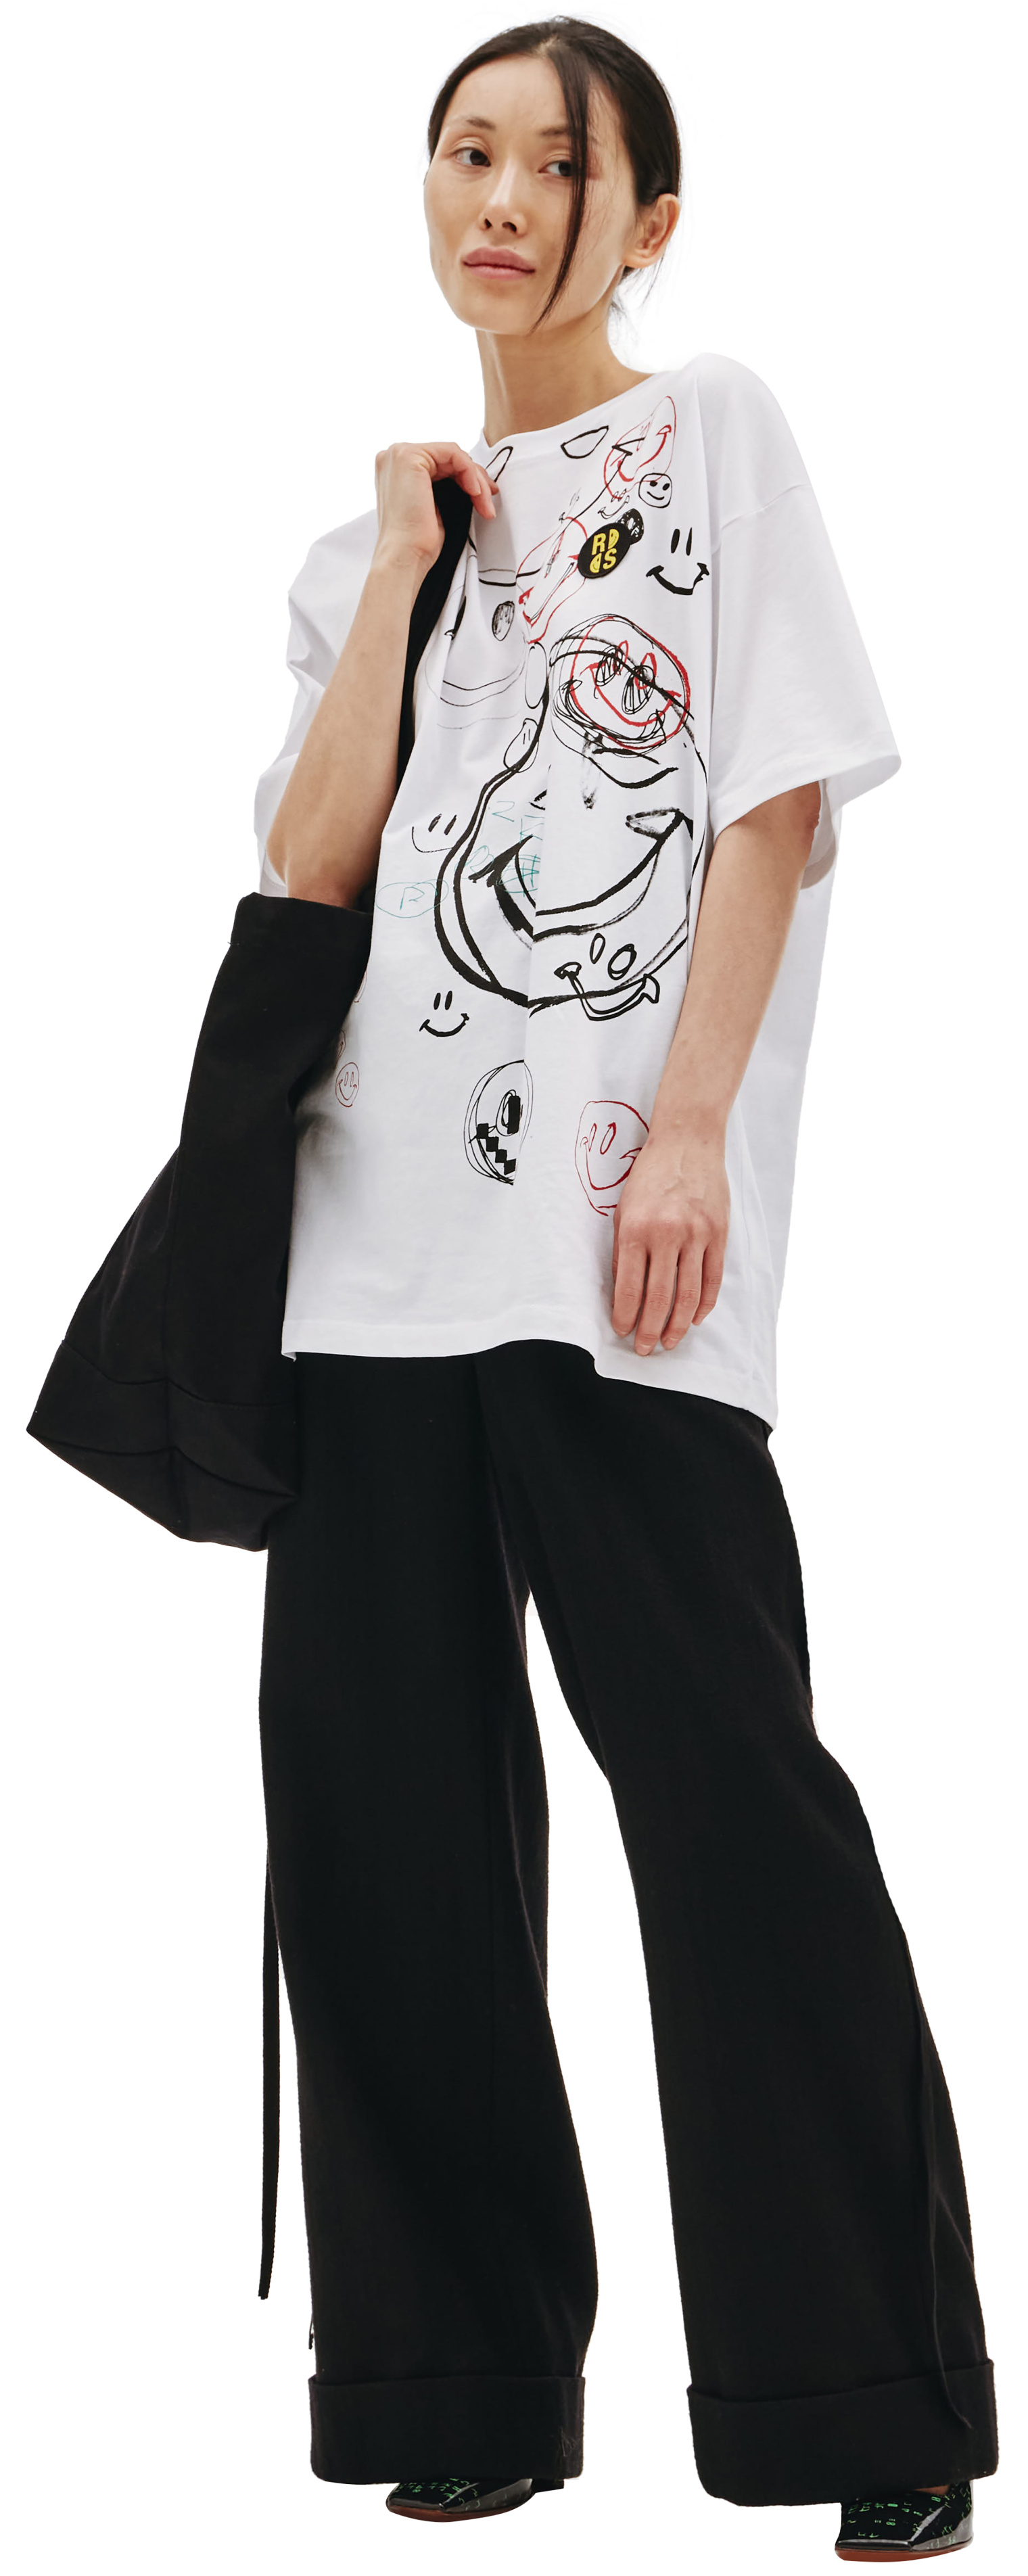 Raf Simons Raf Simons x Smiley Oversized Drawing Print T-Shirt